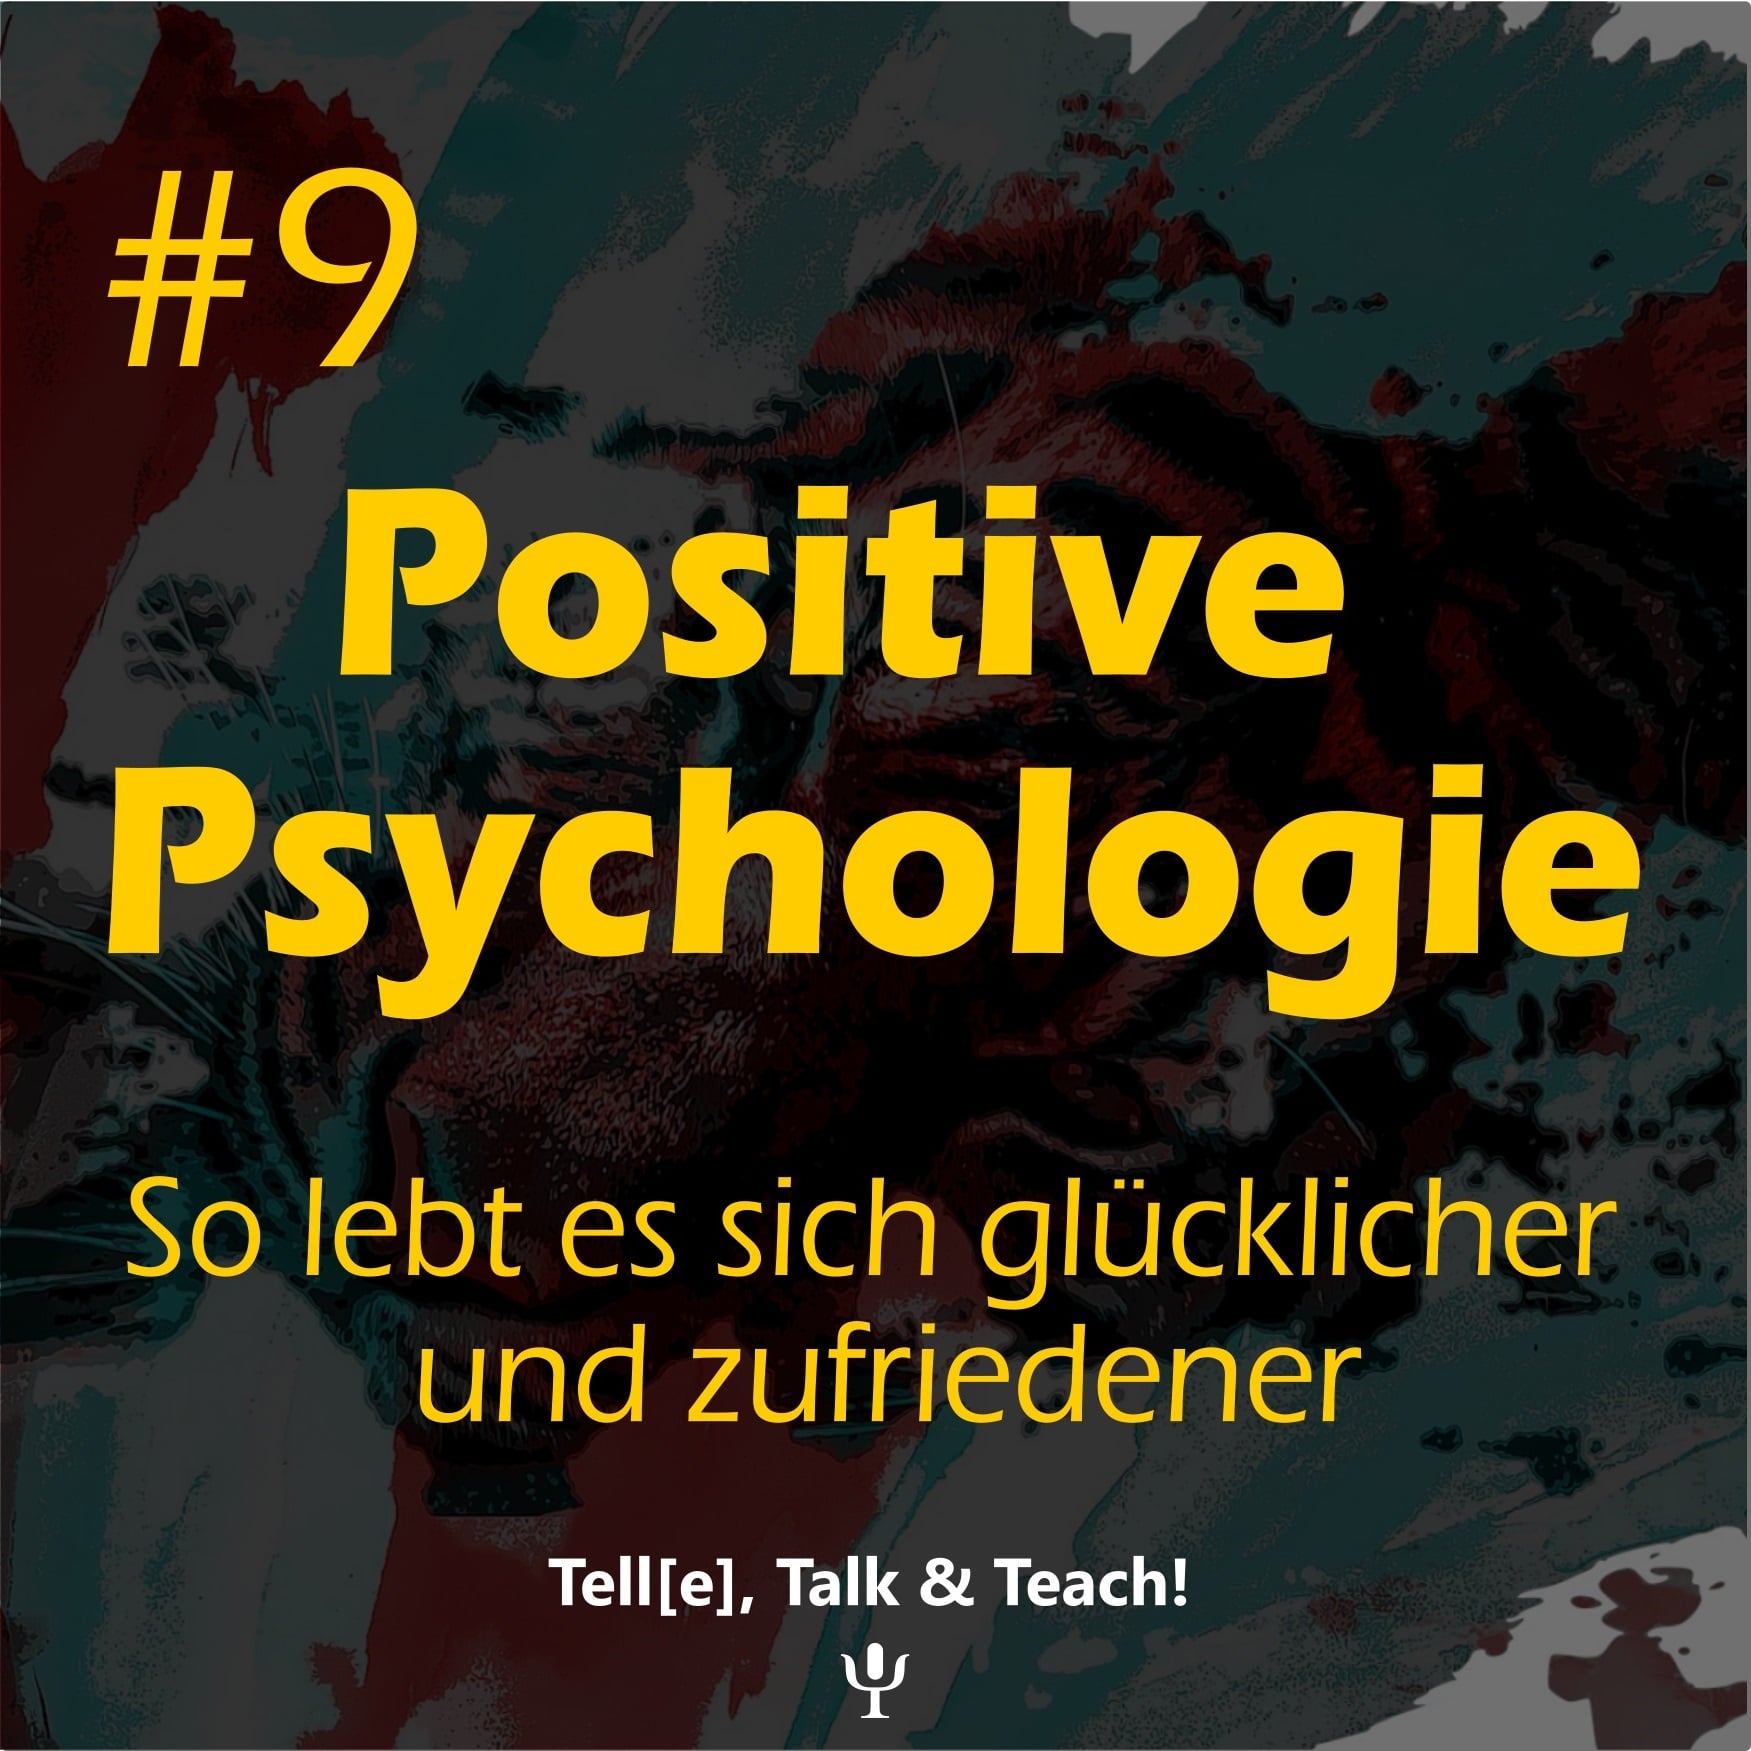 #9 Positive Psychologie – so lebt es sich glücklicher und zufriedener